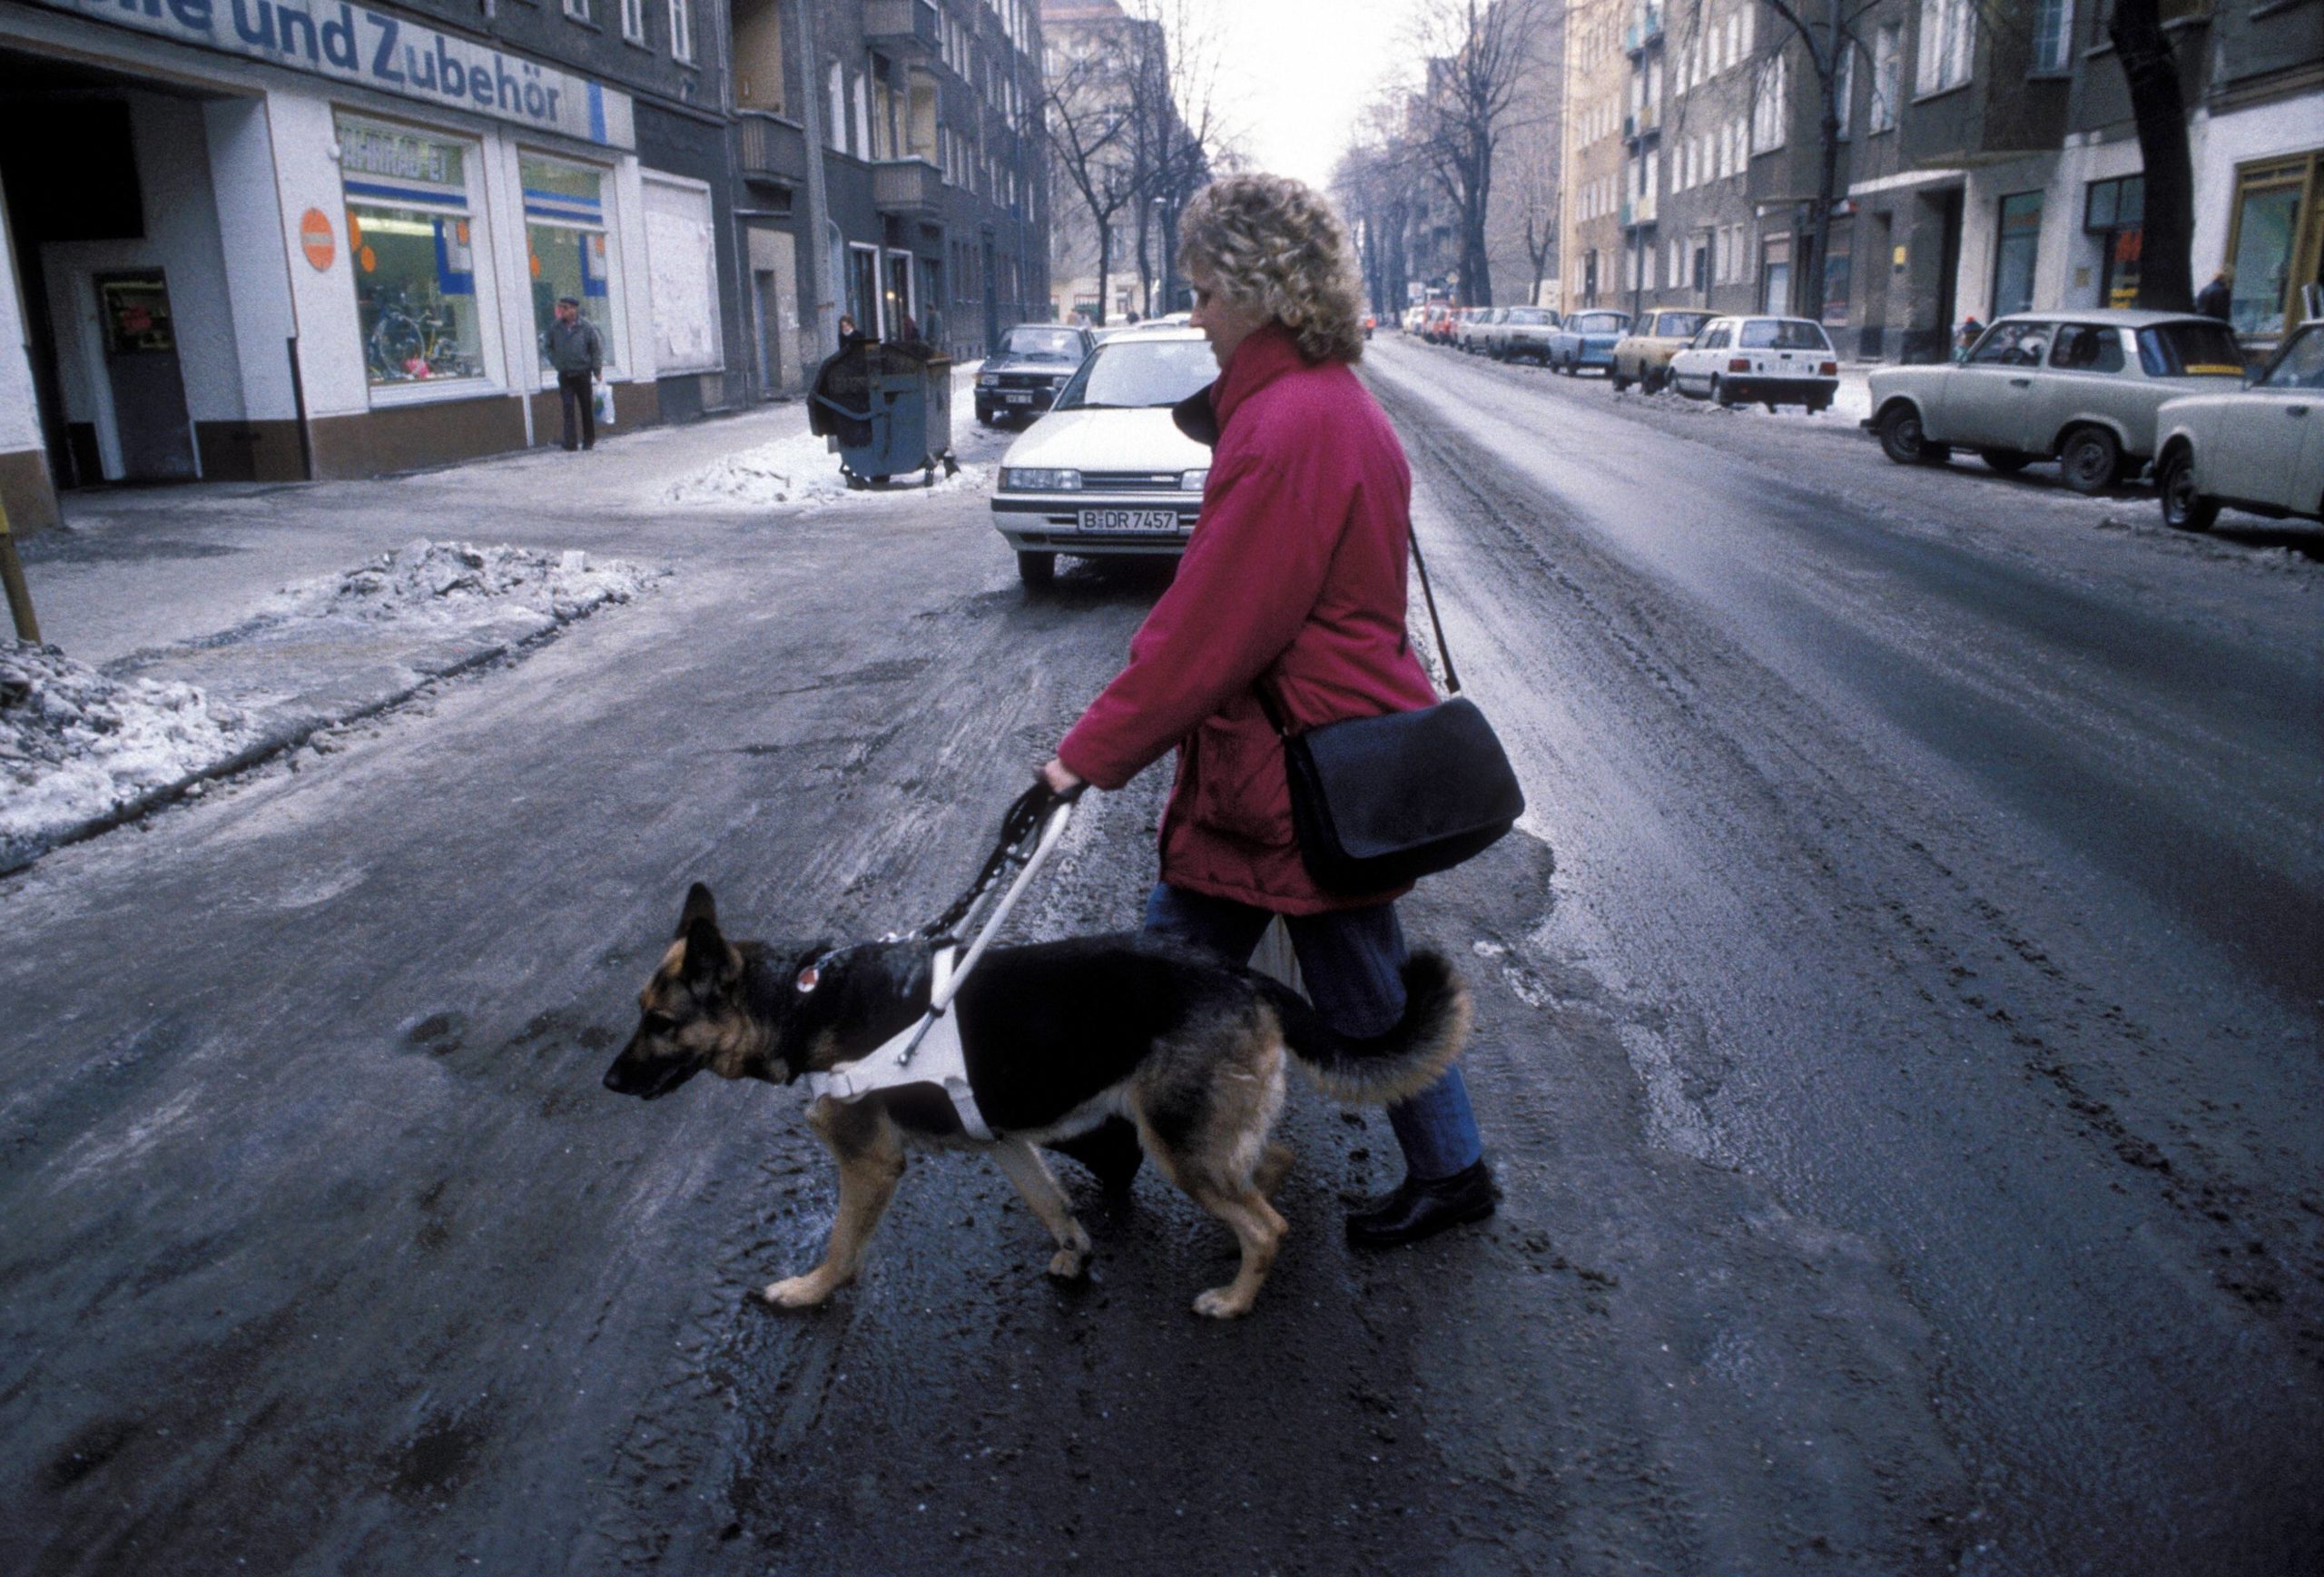 Blindenhund im Einsatz, 1991. Foto: Imago/Stana